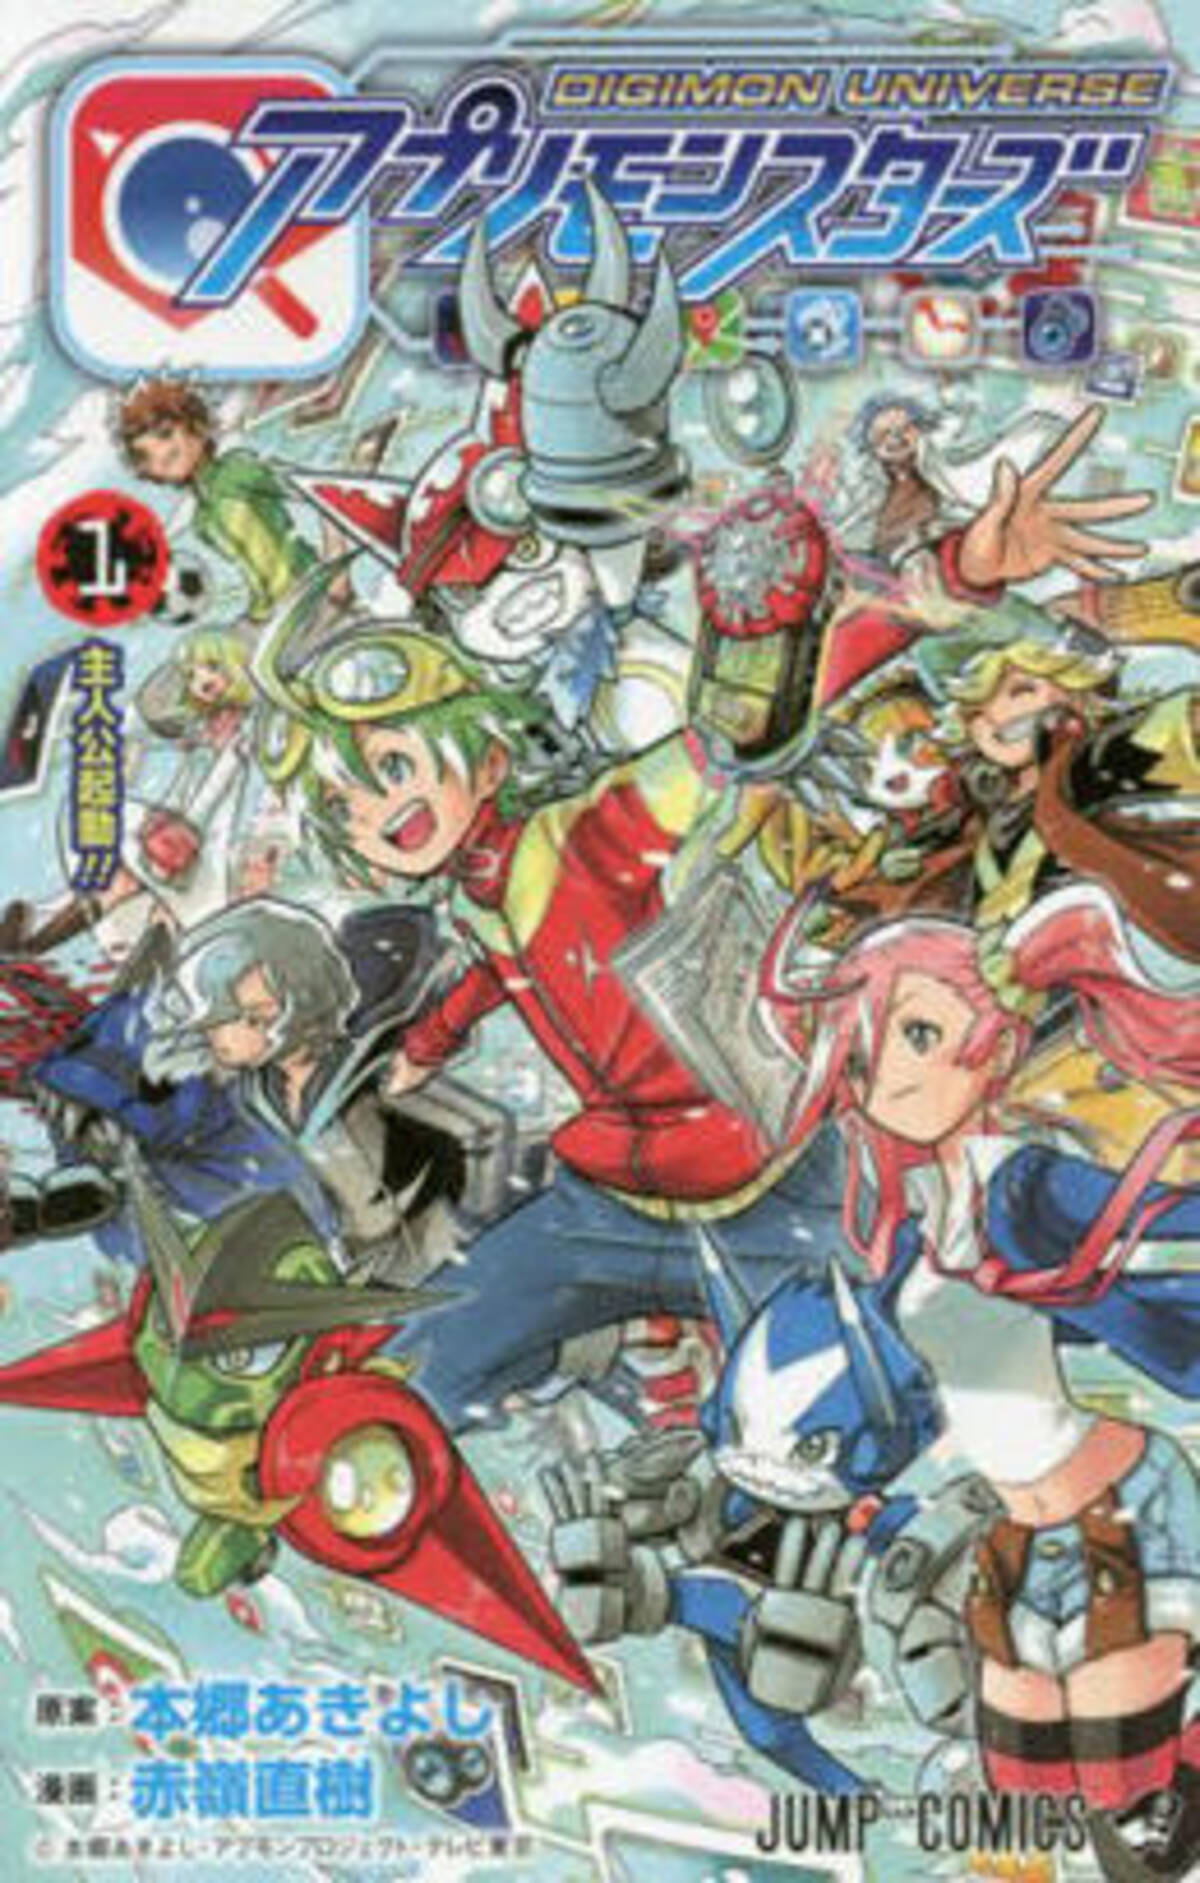 デジモン じゃなくて ロックマンエグゼ でした Digimon Universe アプリモンスターズ 1巻レビュー 17年5月4日 エキサイトニュース